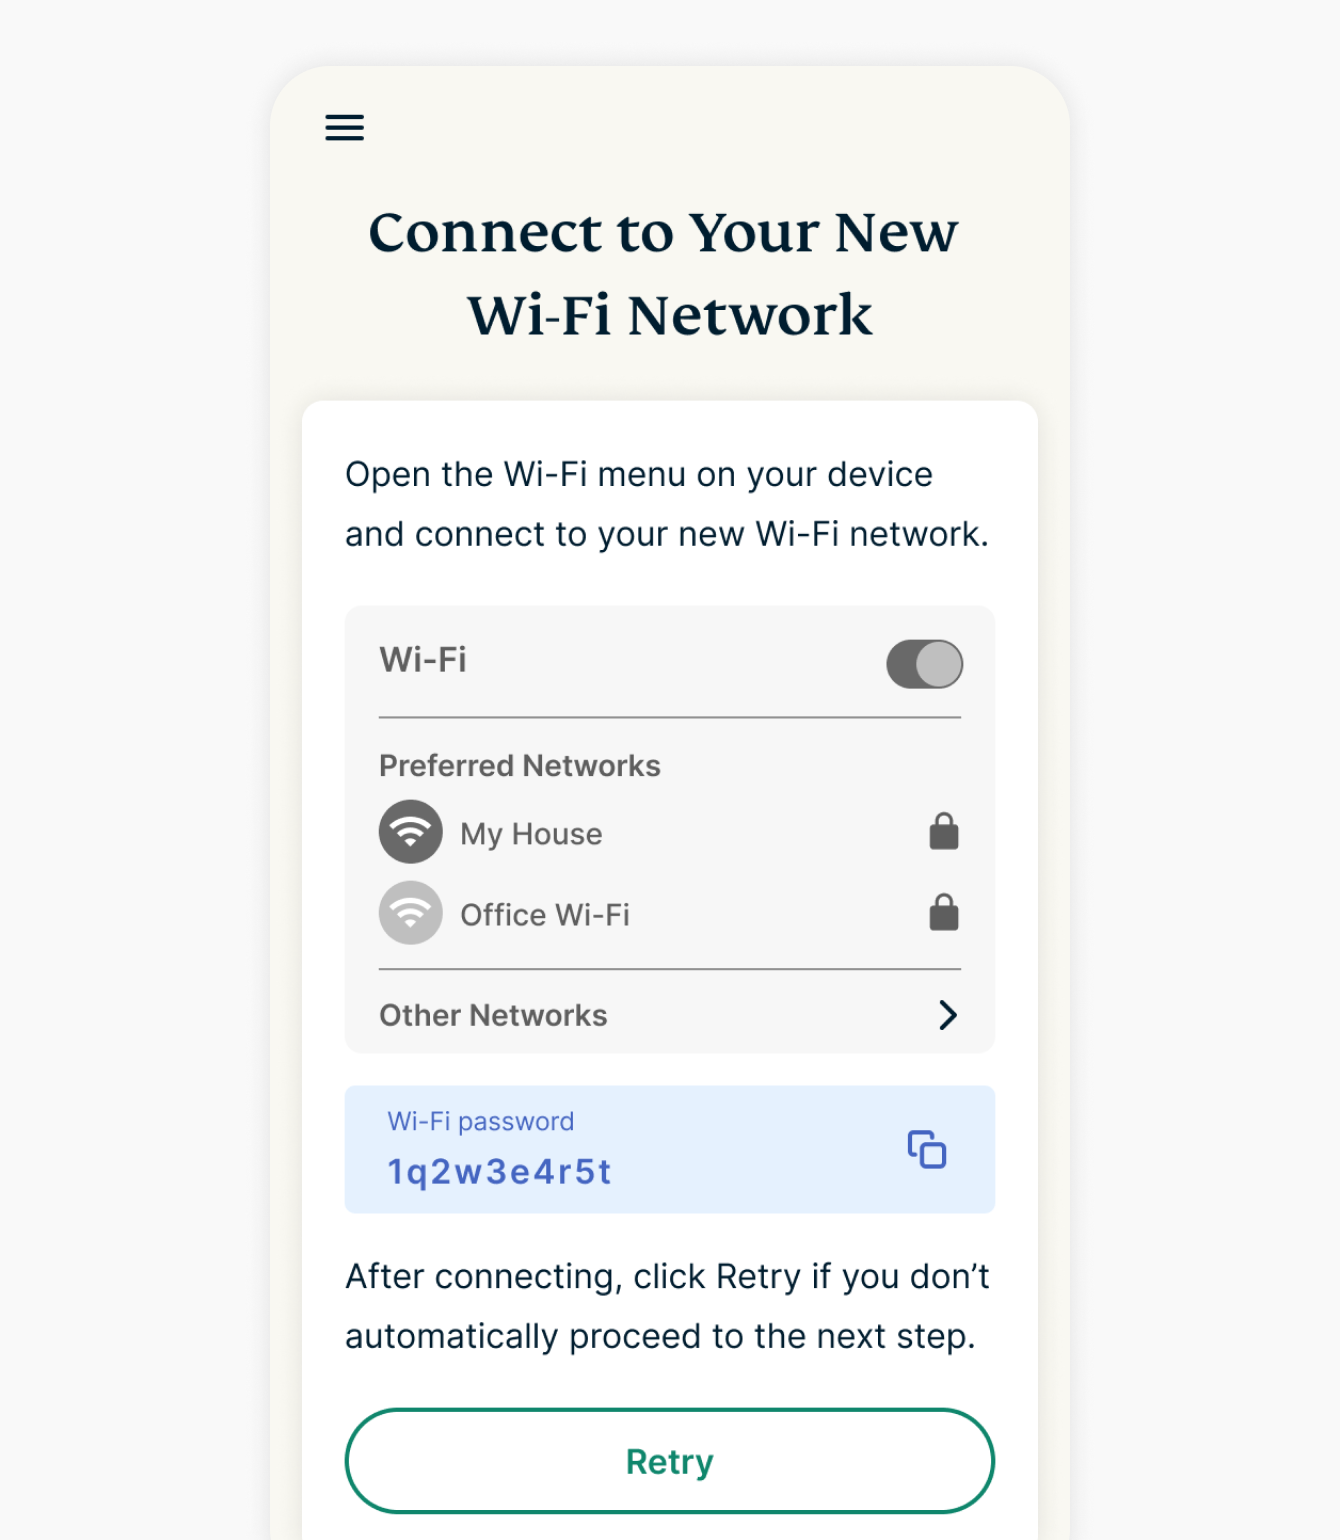 подключение к новой сети wi-fi